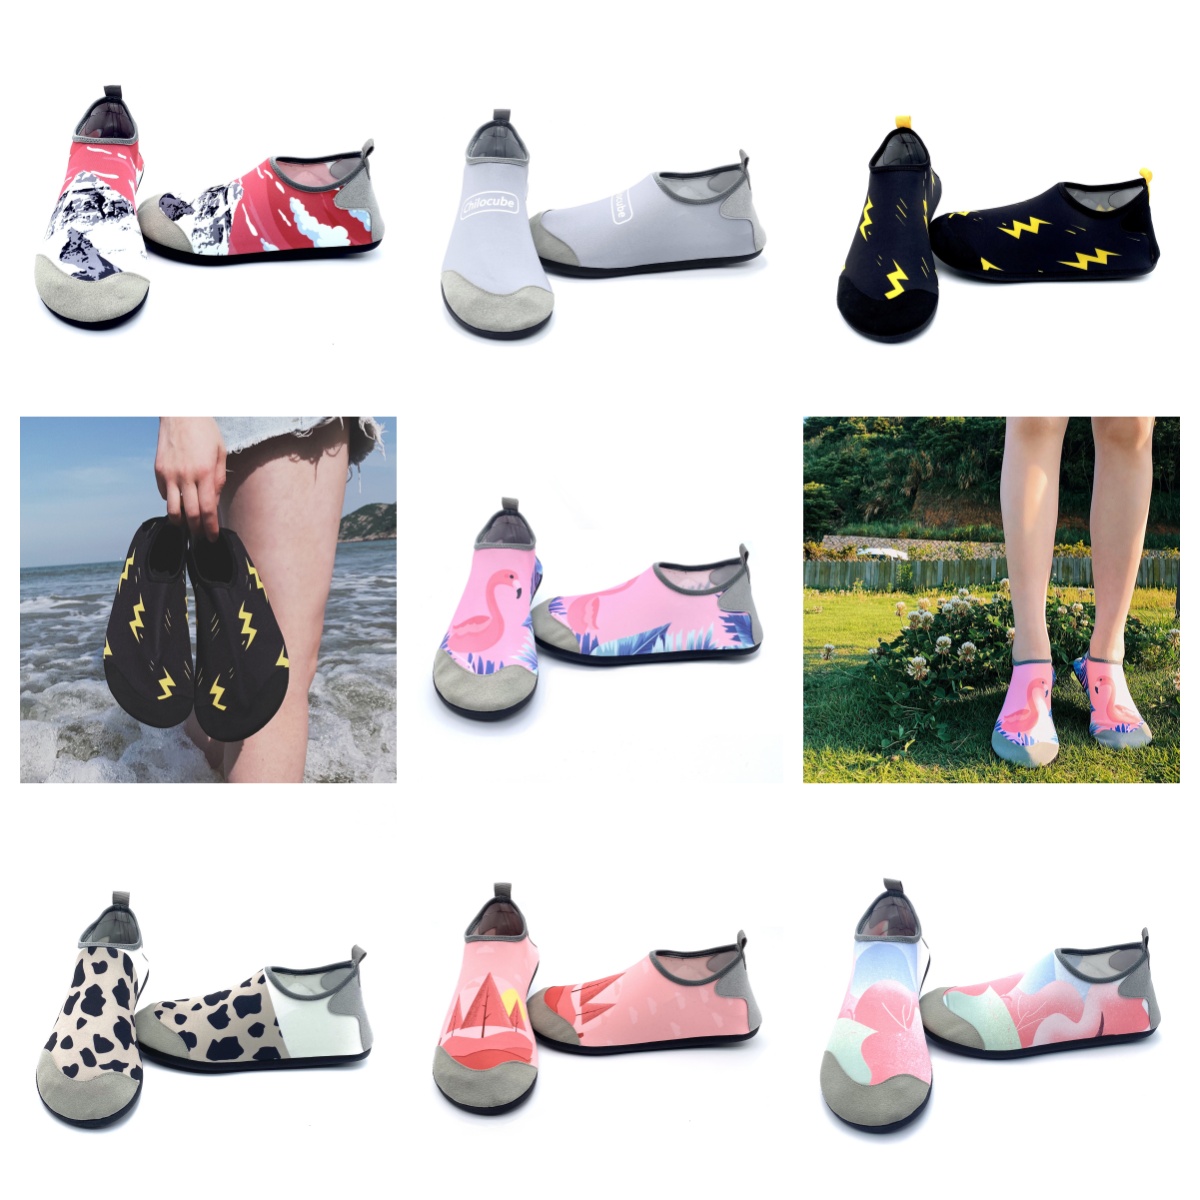 Sapatos atléticos gai sandália e sapatos femininos caçando sapatos esportivos de nadação descalços de banda ao ar livre sandal casal de sandal creek shee tamanho eur 35-46